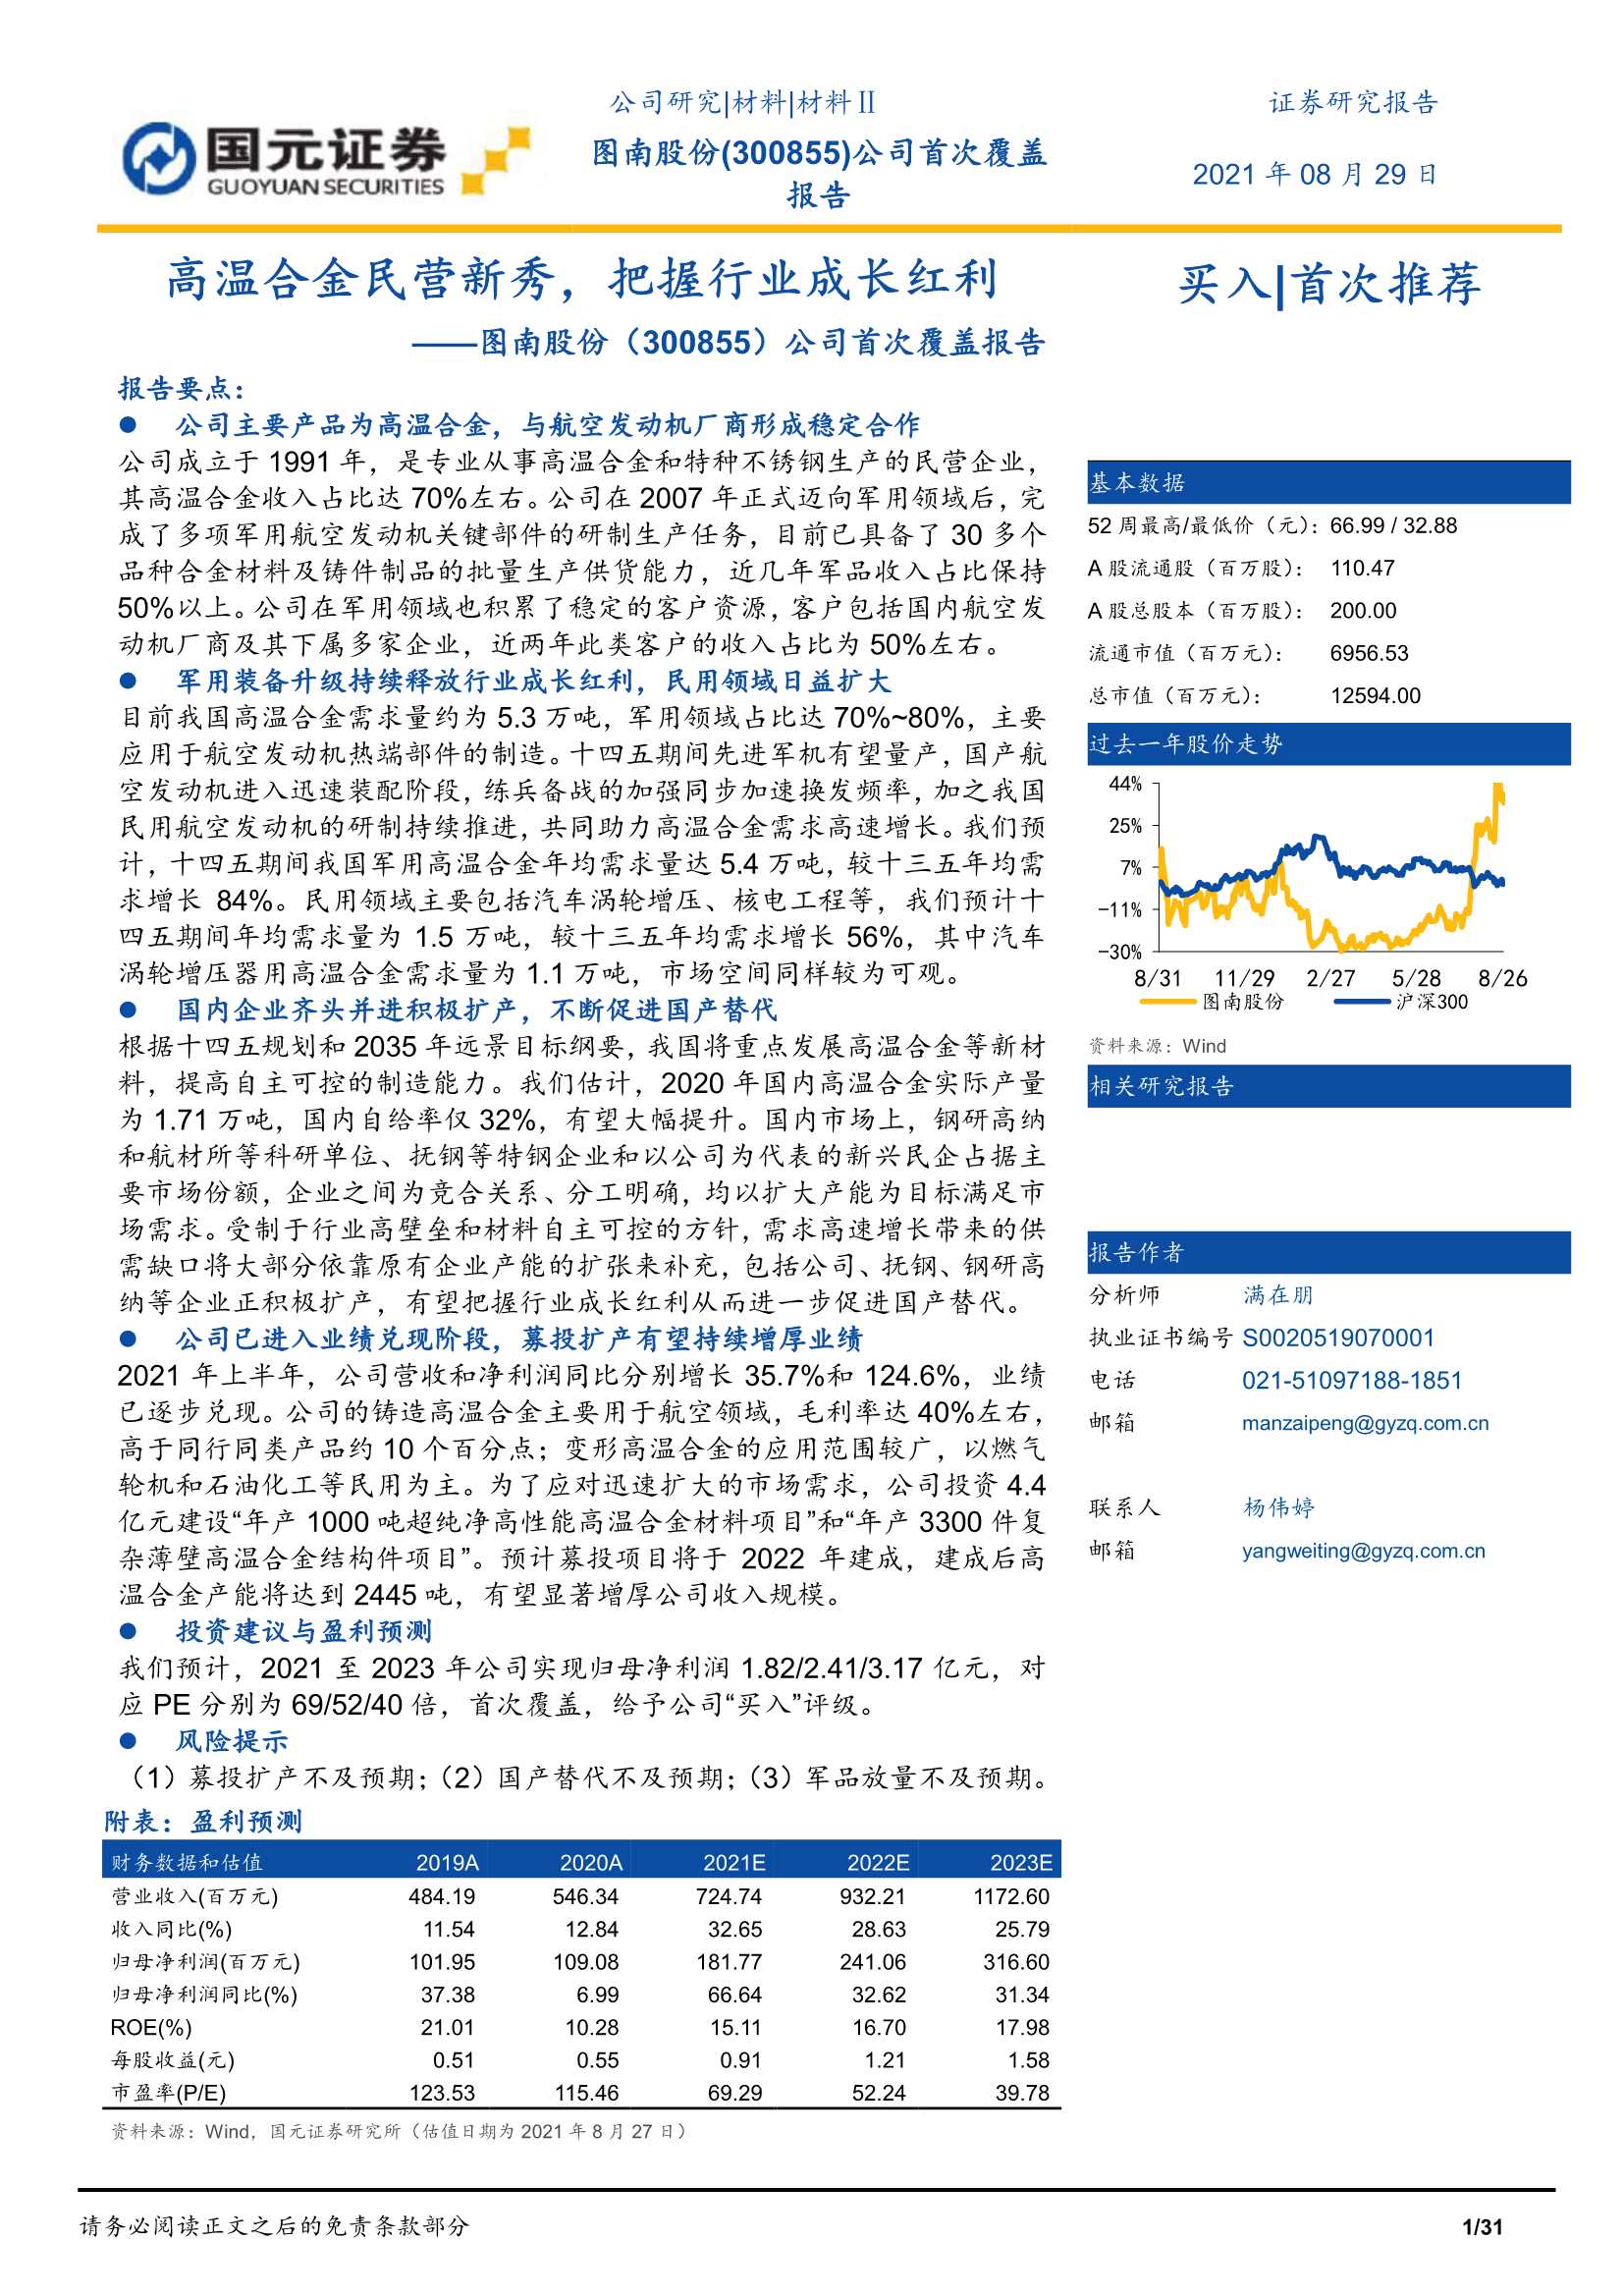 国元证券-图南股份-300855-公司首次覆盖报告：高温合金民营新秀，把握行业成长红利-20210829-31页